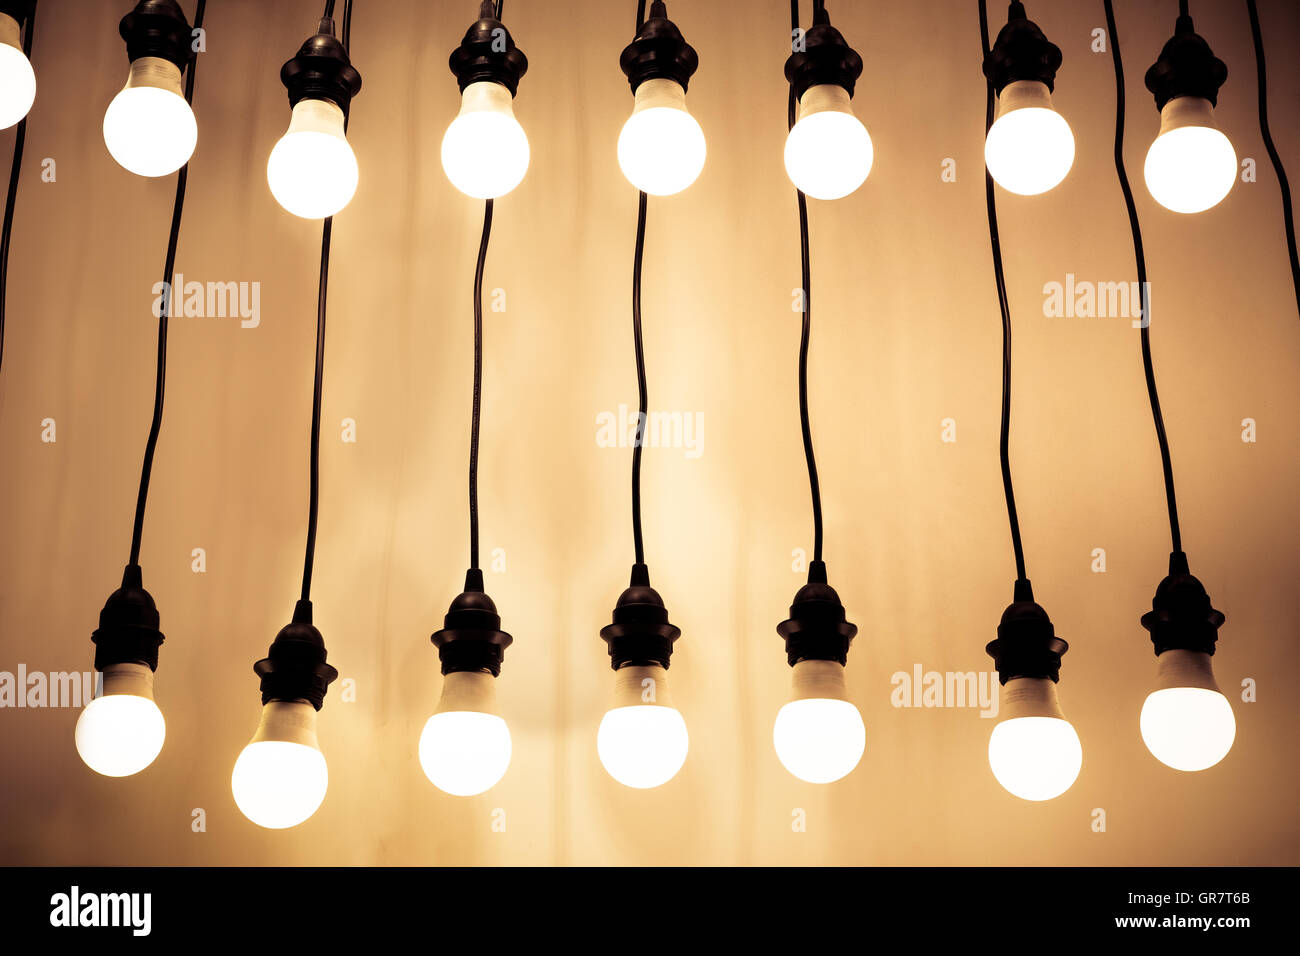 Beleuchteten Glühbirnen hängen Drähte an Wand Stockfoto